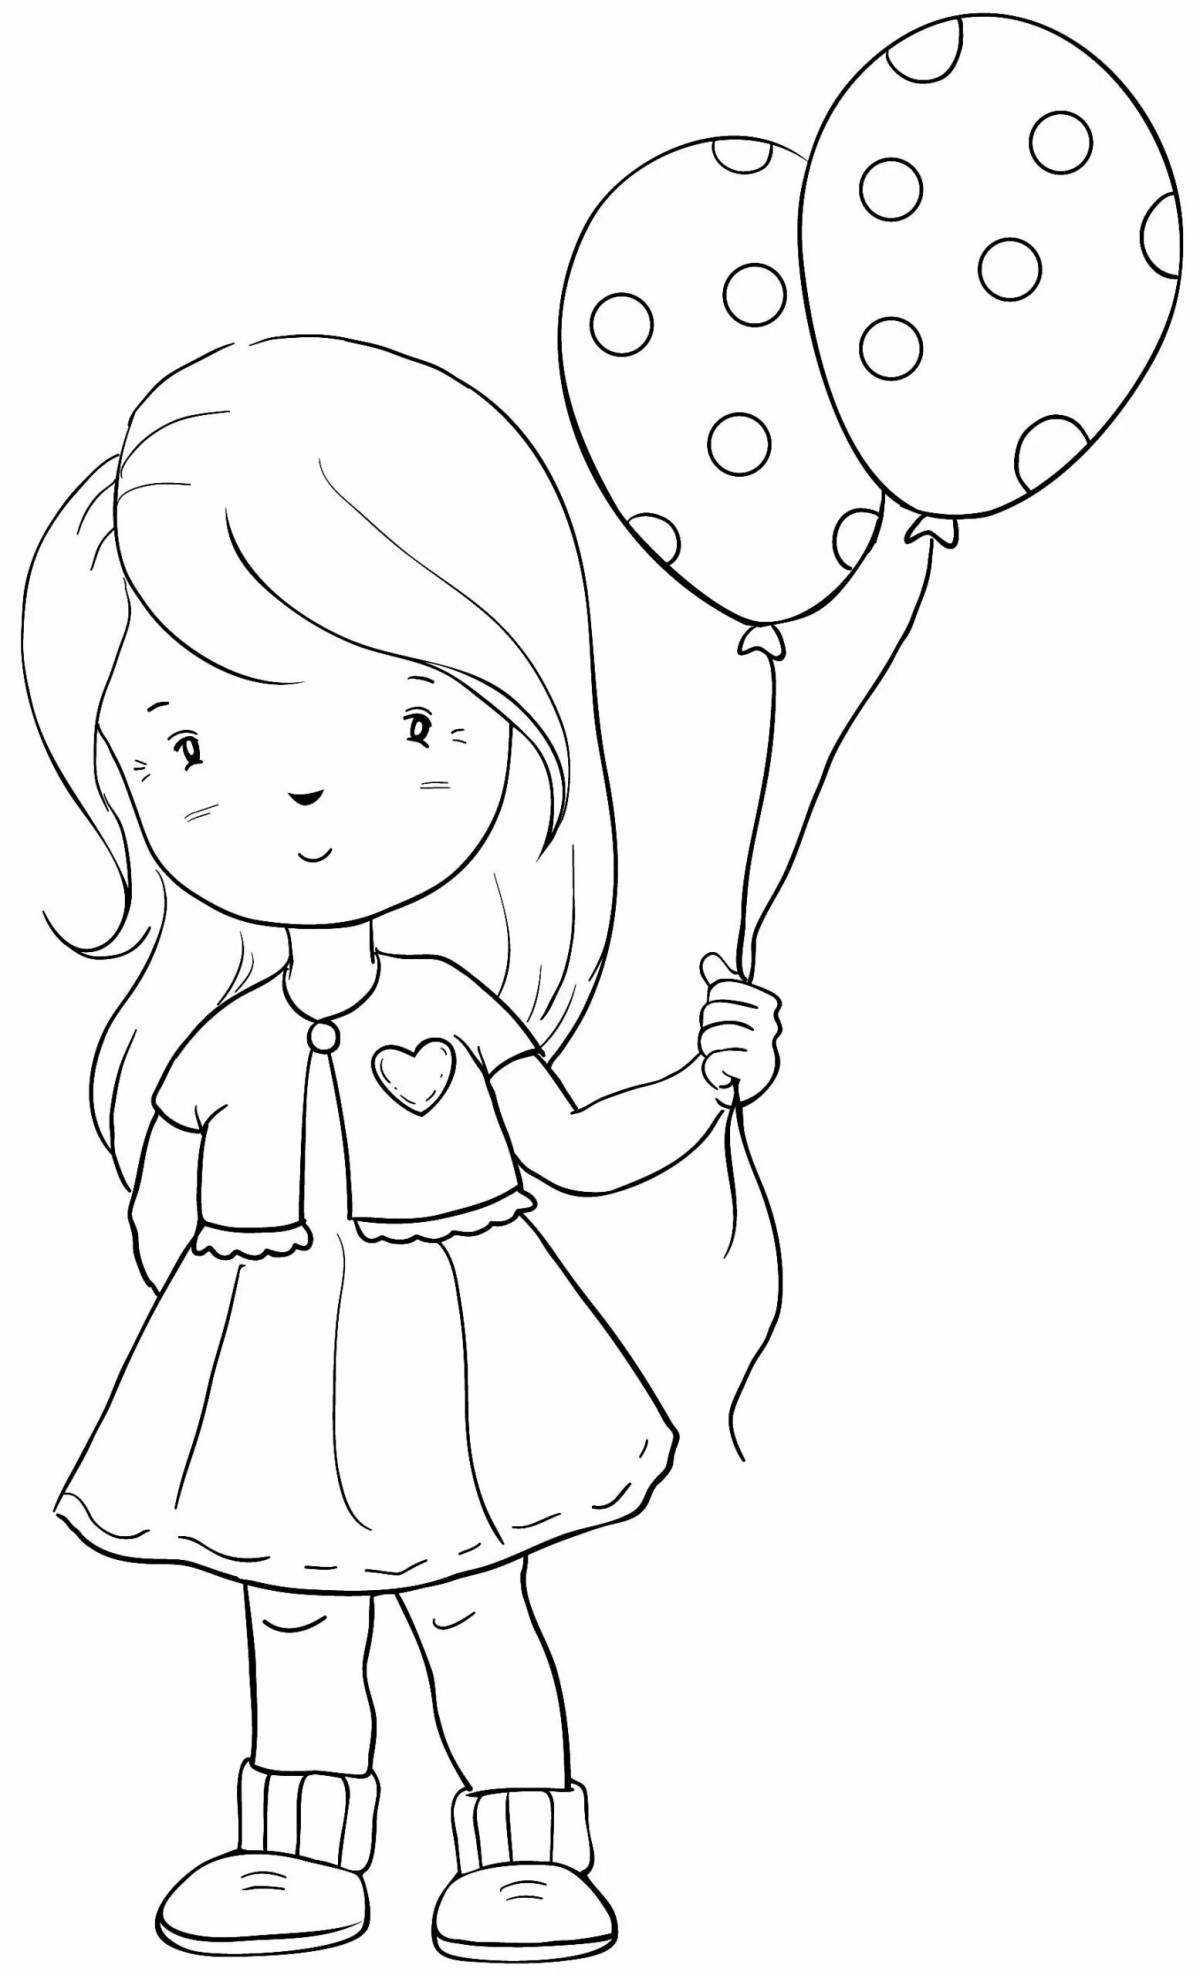 Balloon girl #3